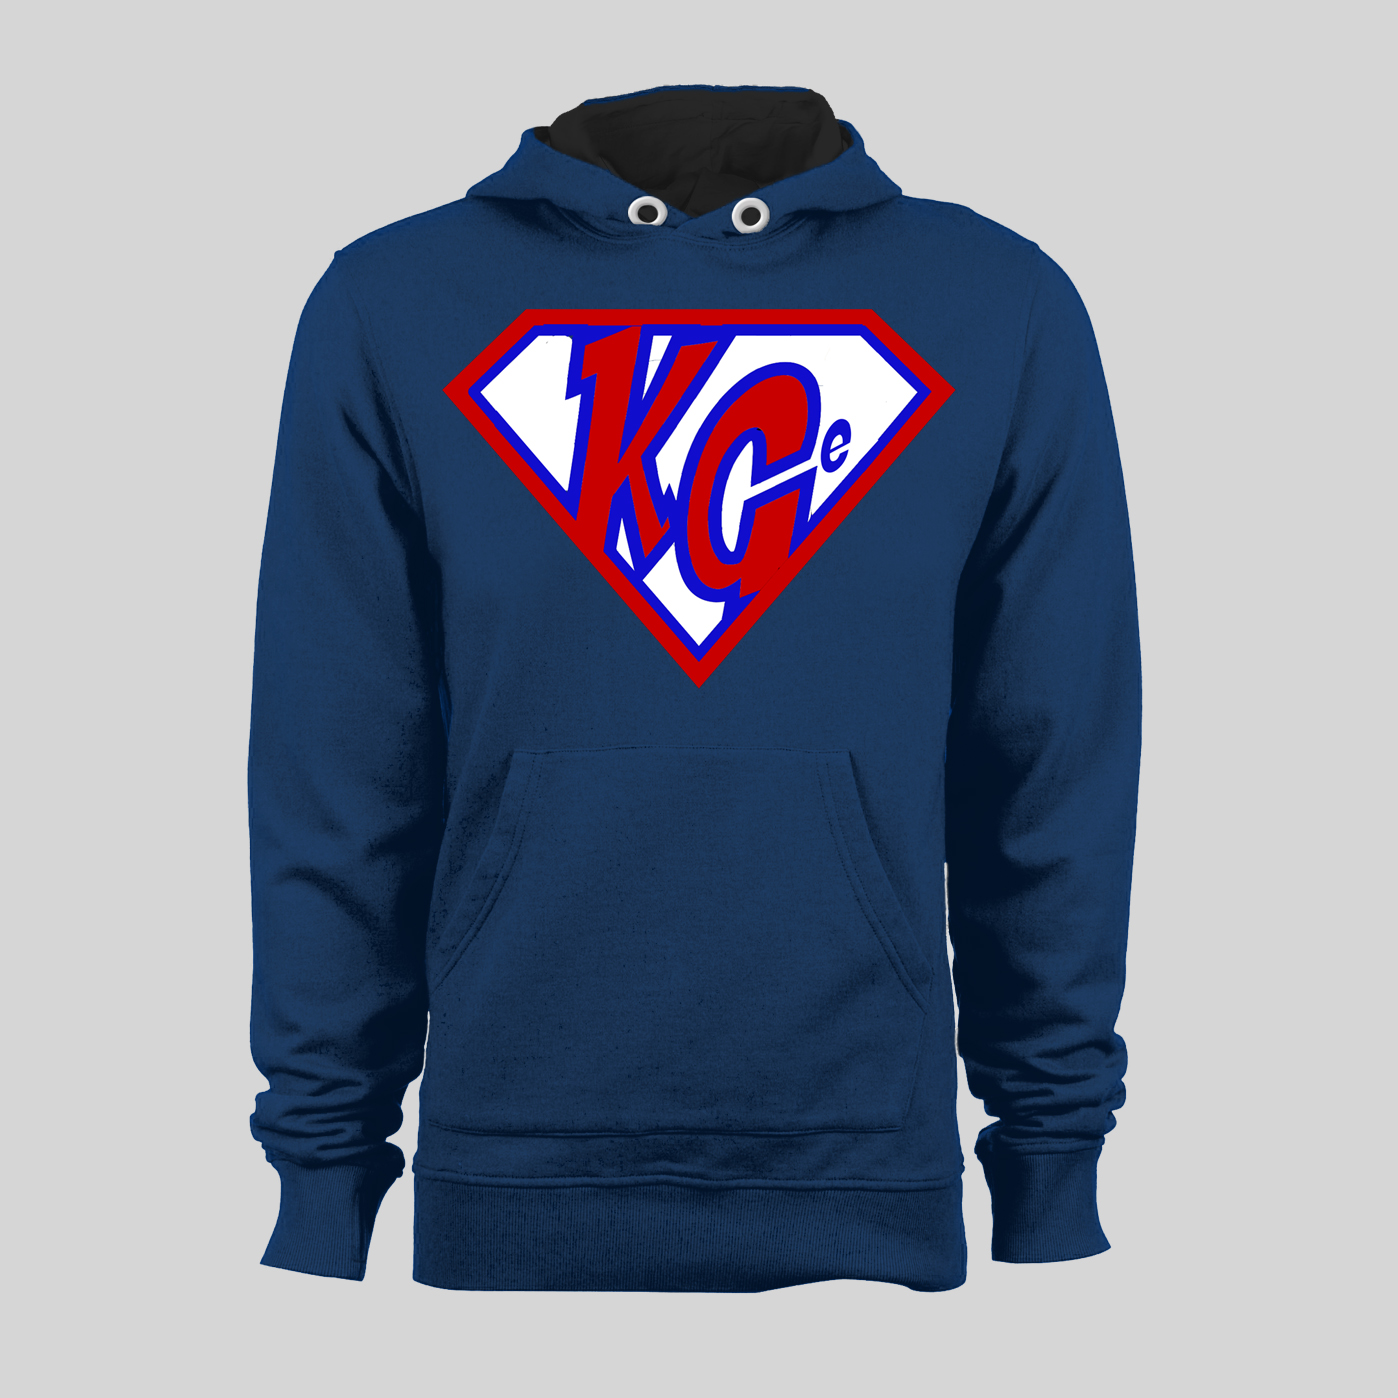 KG Super Navy Hooded Sweatshirt